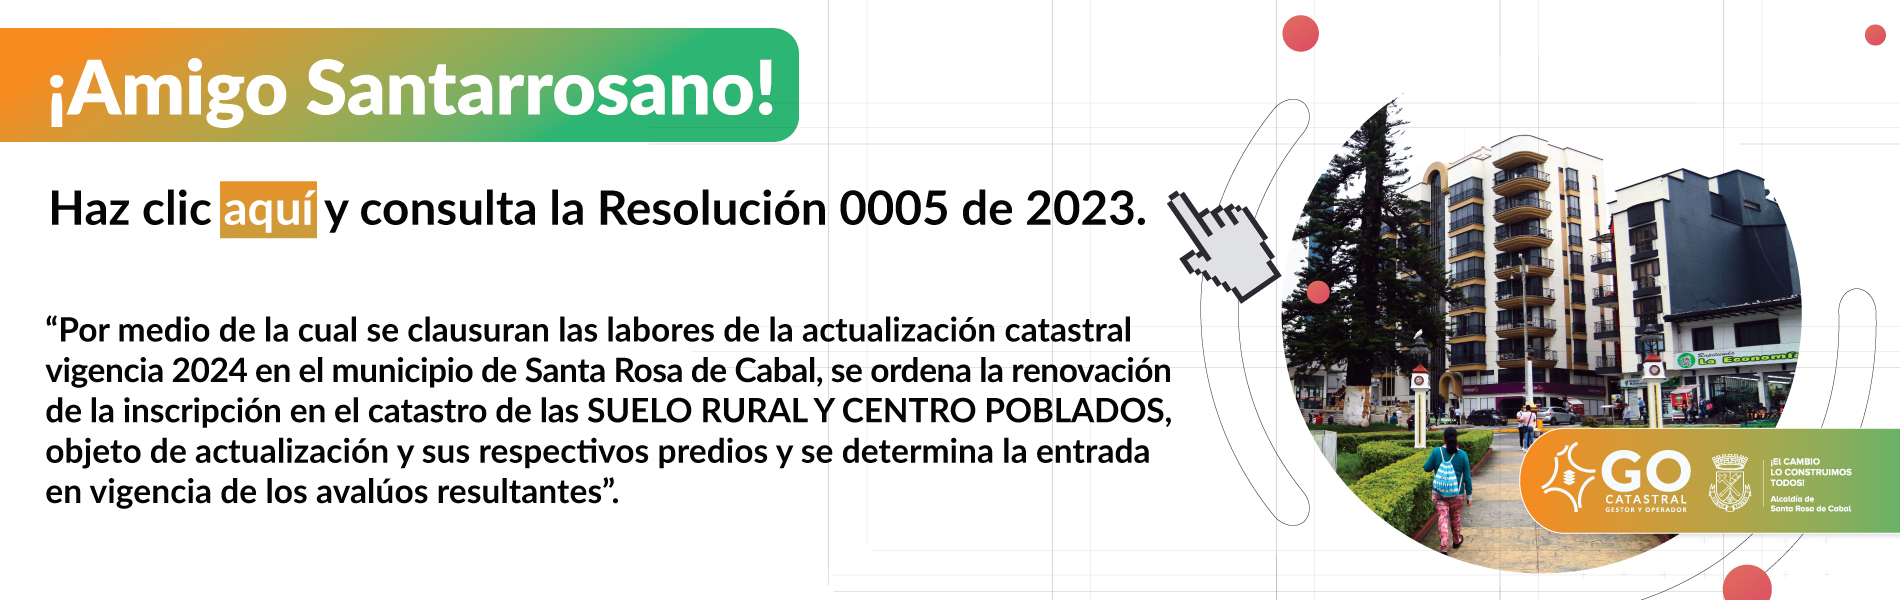 Resolución 0005 de 2023 - Santa Rosa de Cabal